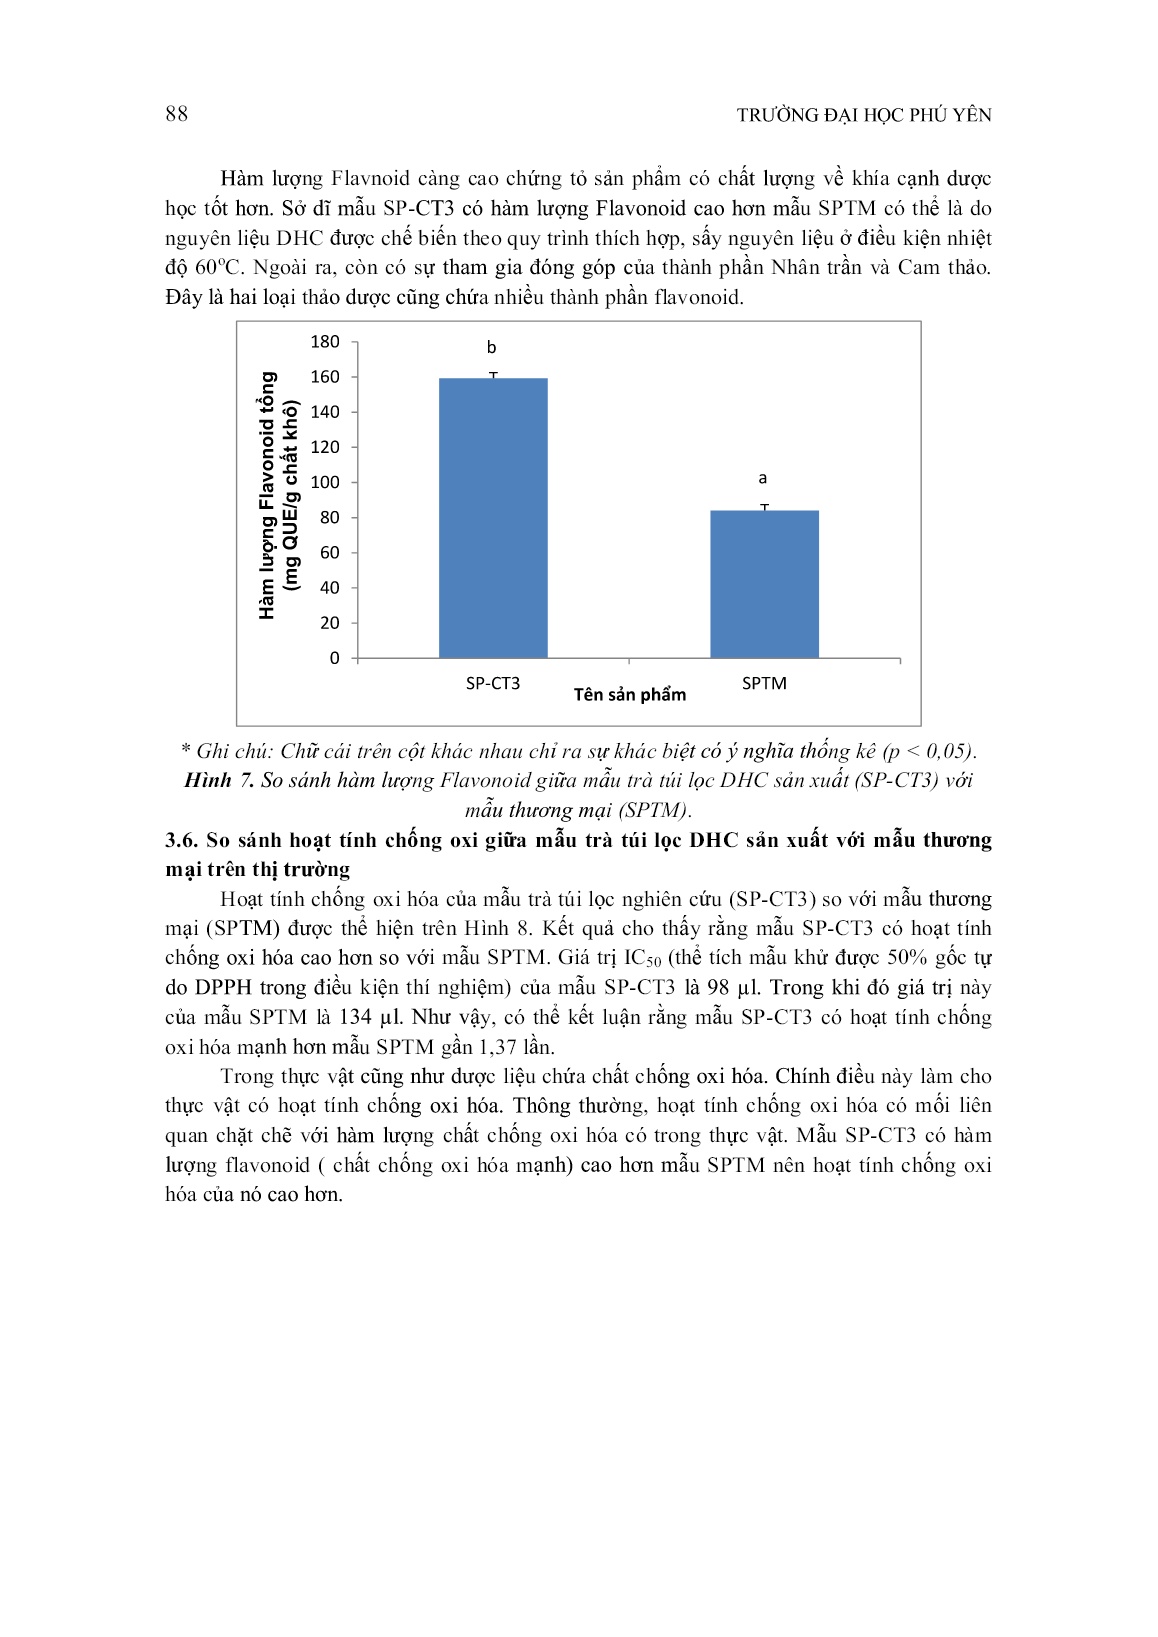 Nghiên cứu xây dựng quy trình sản xuất trà túi lọc từ diệp hạ châu trồng tại tỉnh Phú Yên trang 9